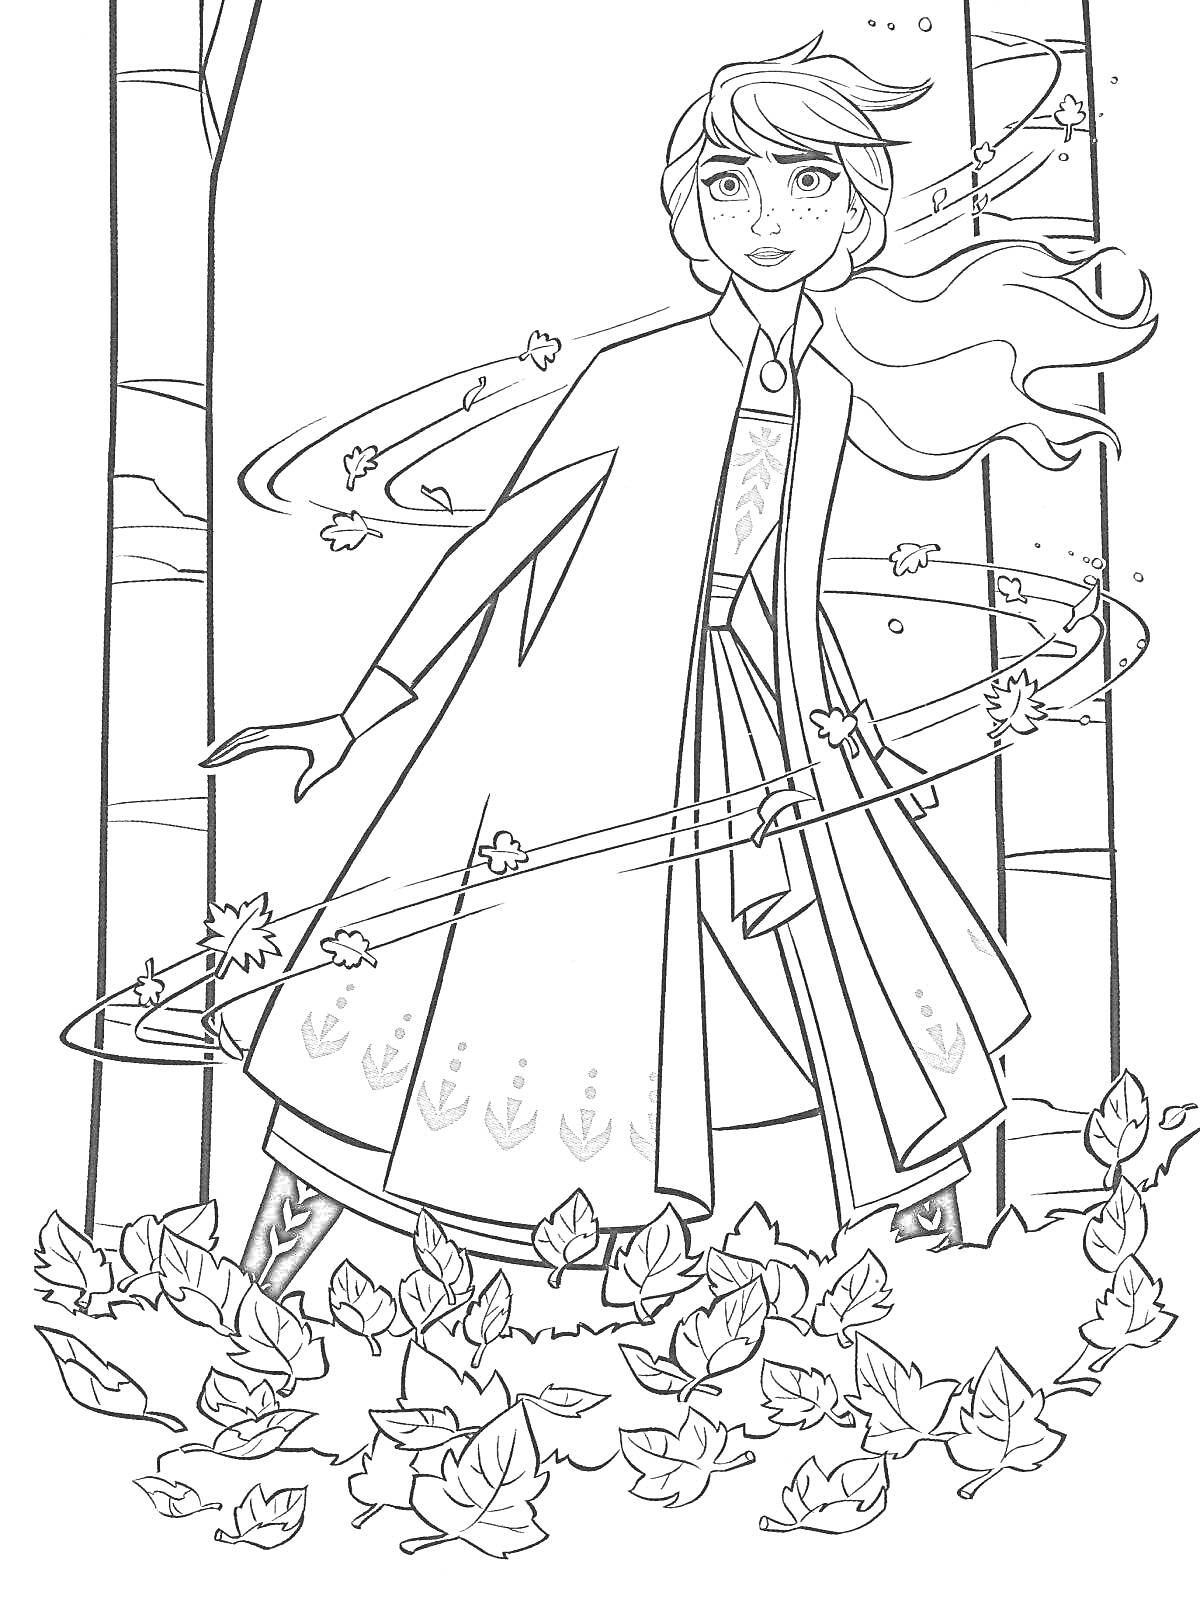 Раскраска Девочка в развевающемся плаще среди деревьев и листьев, сцена из 